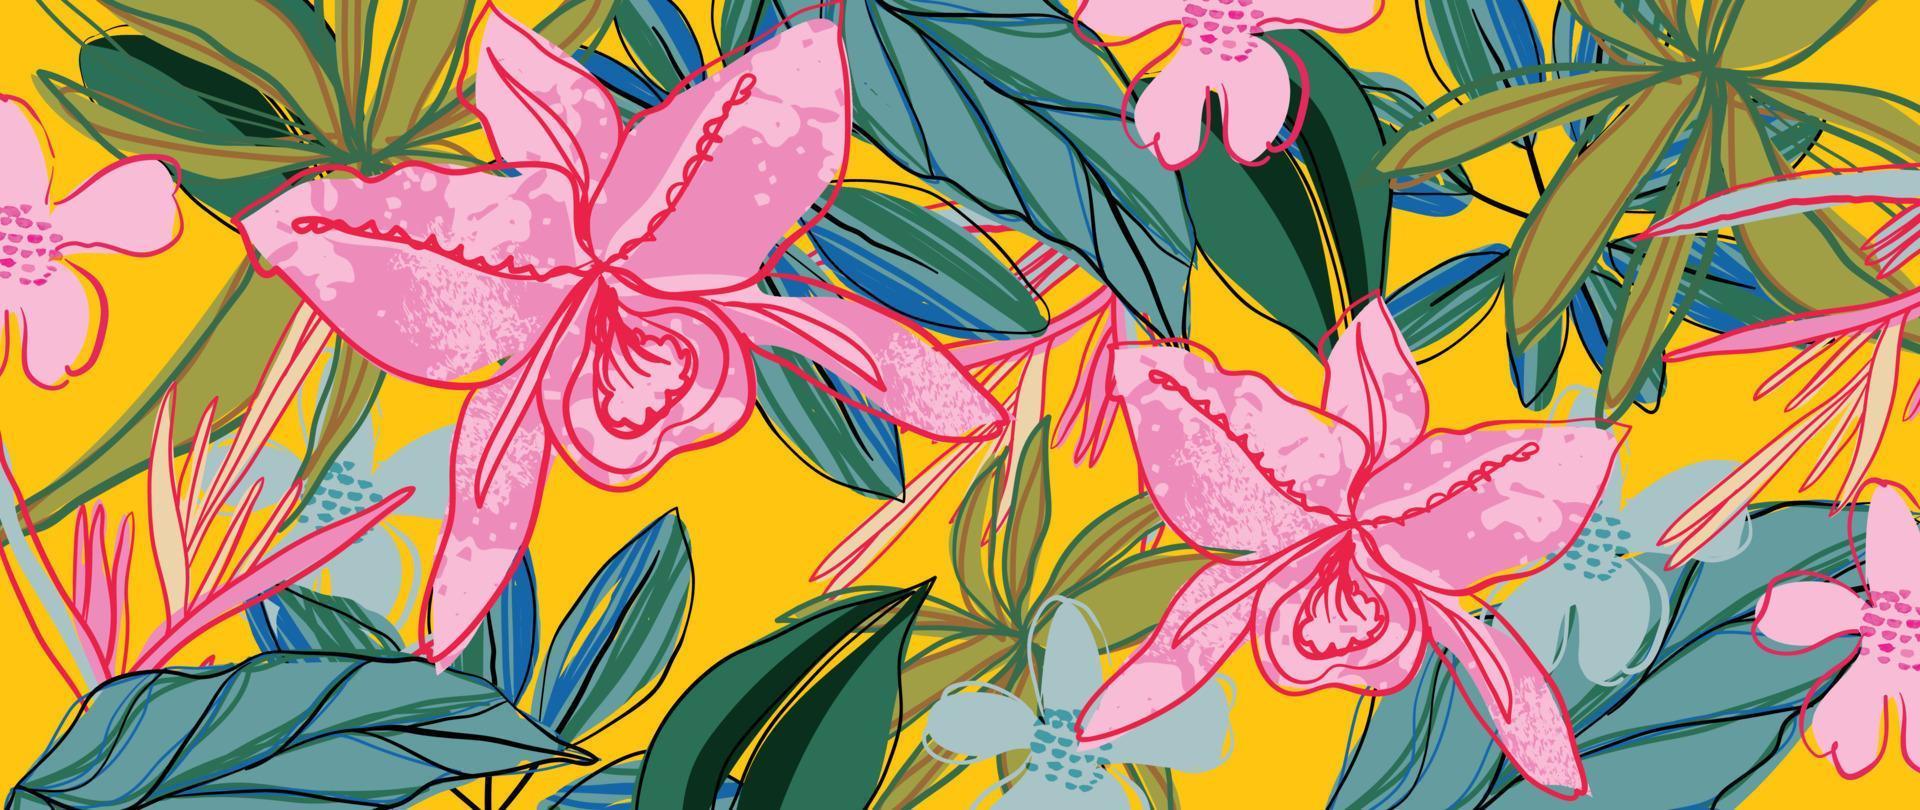 ilustração em vetor fundo tropical colorido. flores da selva, folhas de palmeira, estilo exótico de verão com textura de arte de linha grunge e rabisco. design contemporâneo para decoração de casa, papel de parede.